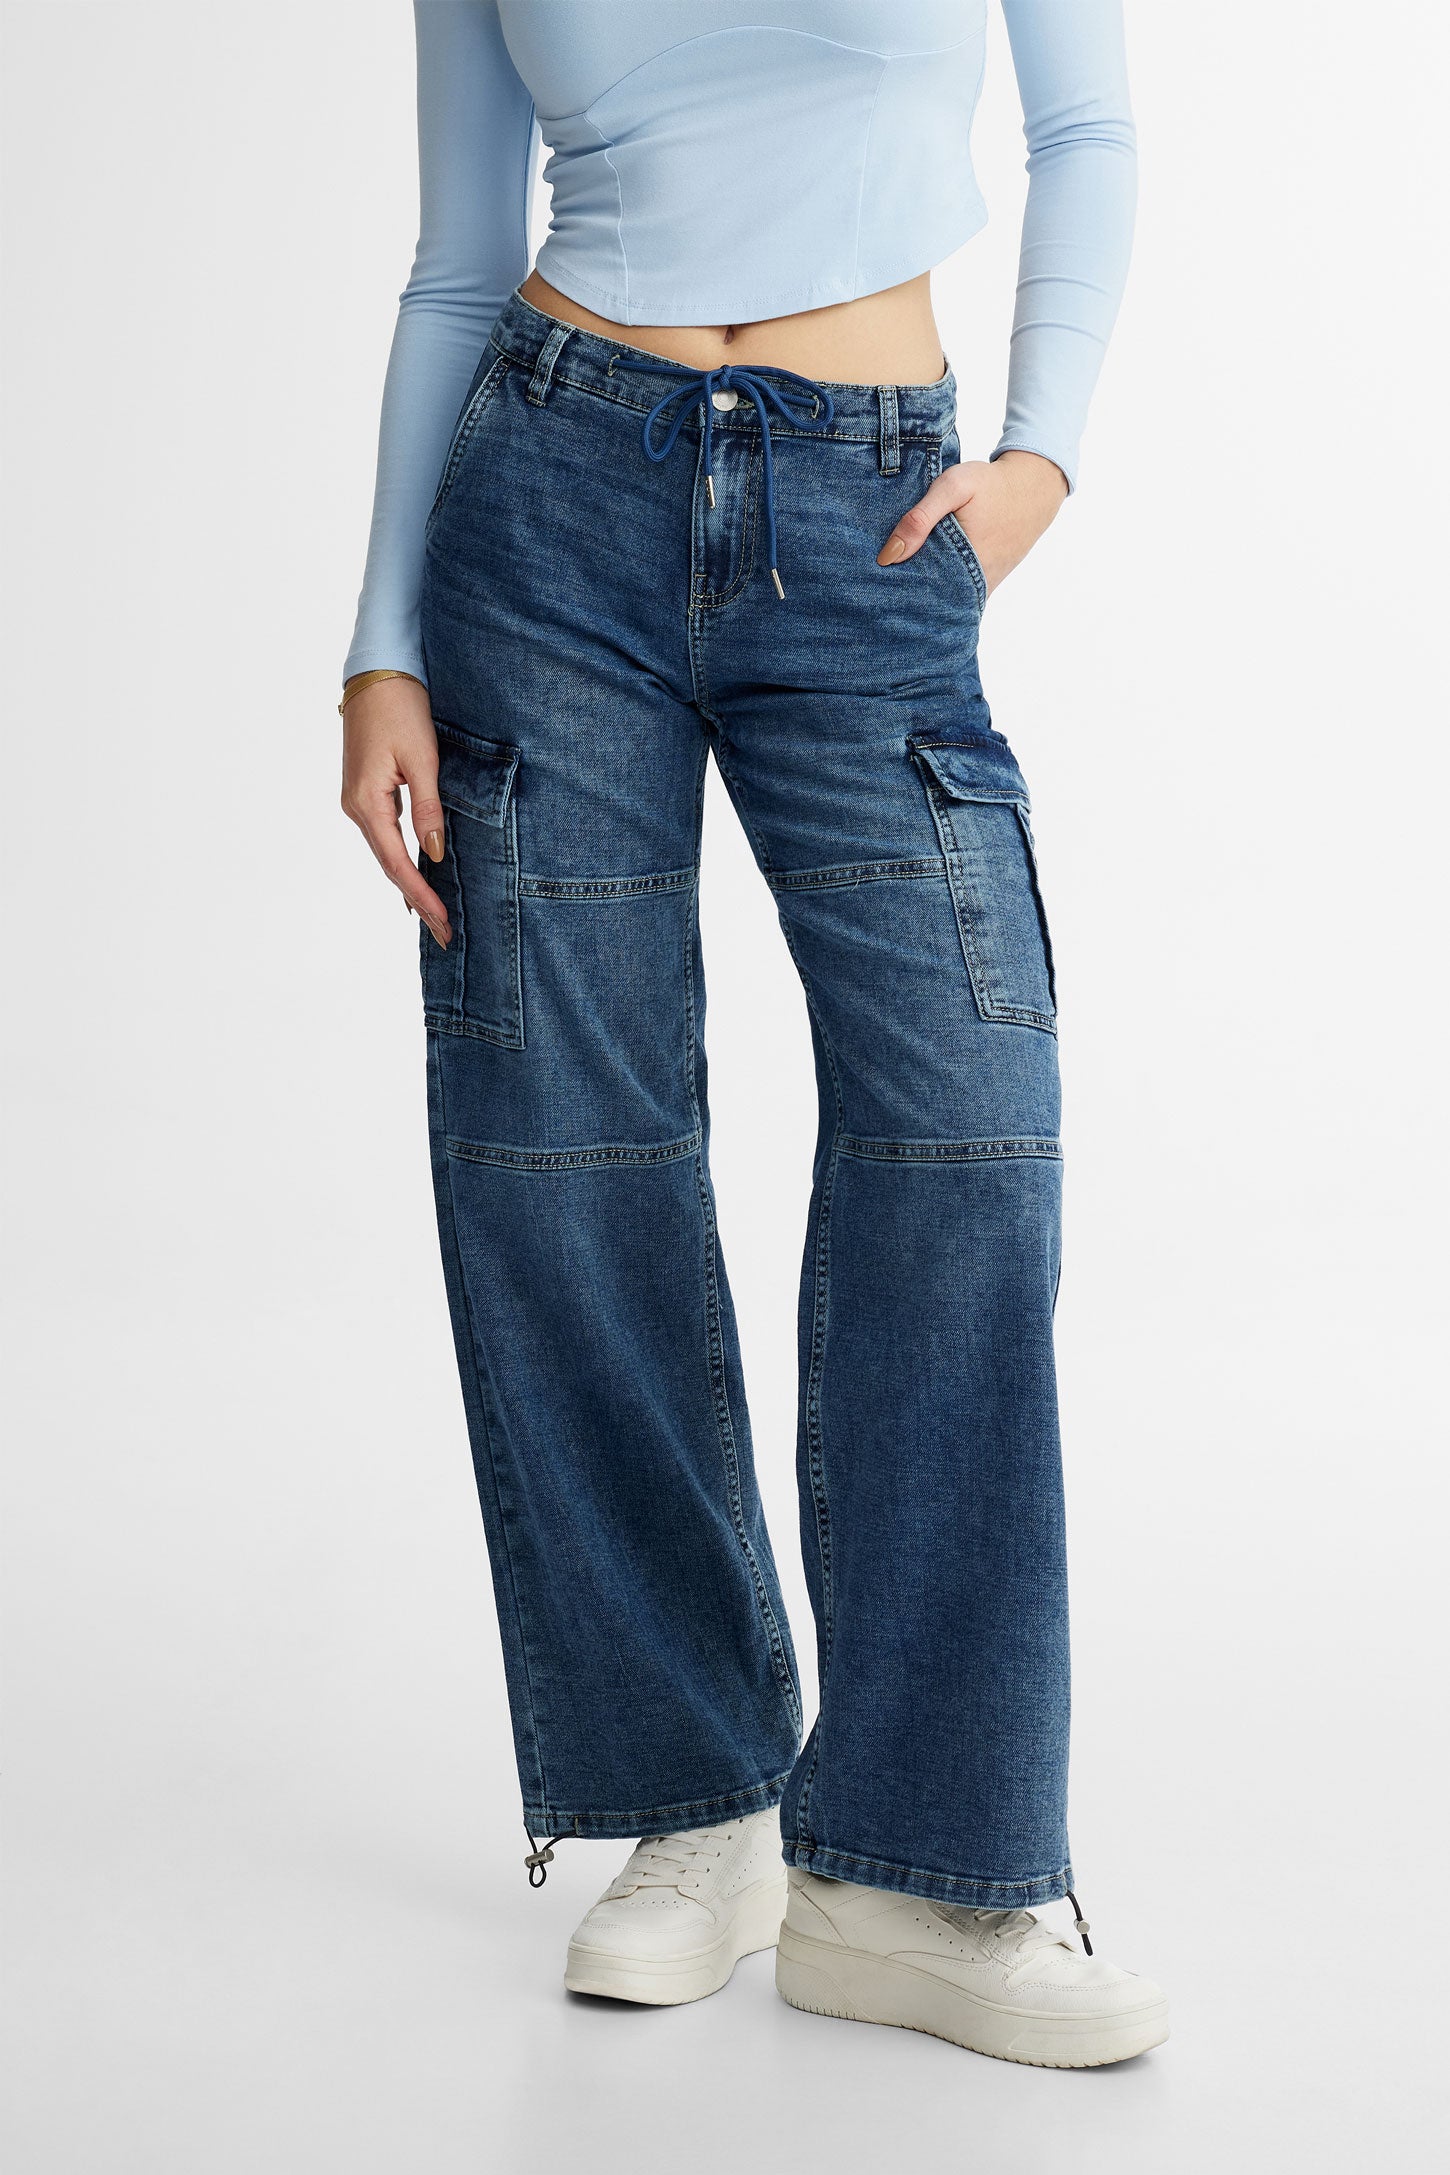 Jeans cargo cheville ajustable - Femme && BLEU